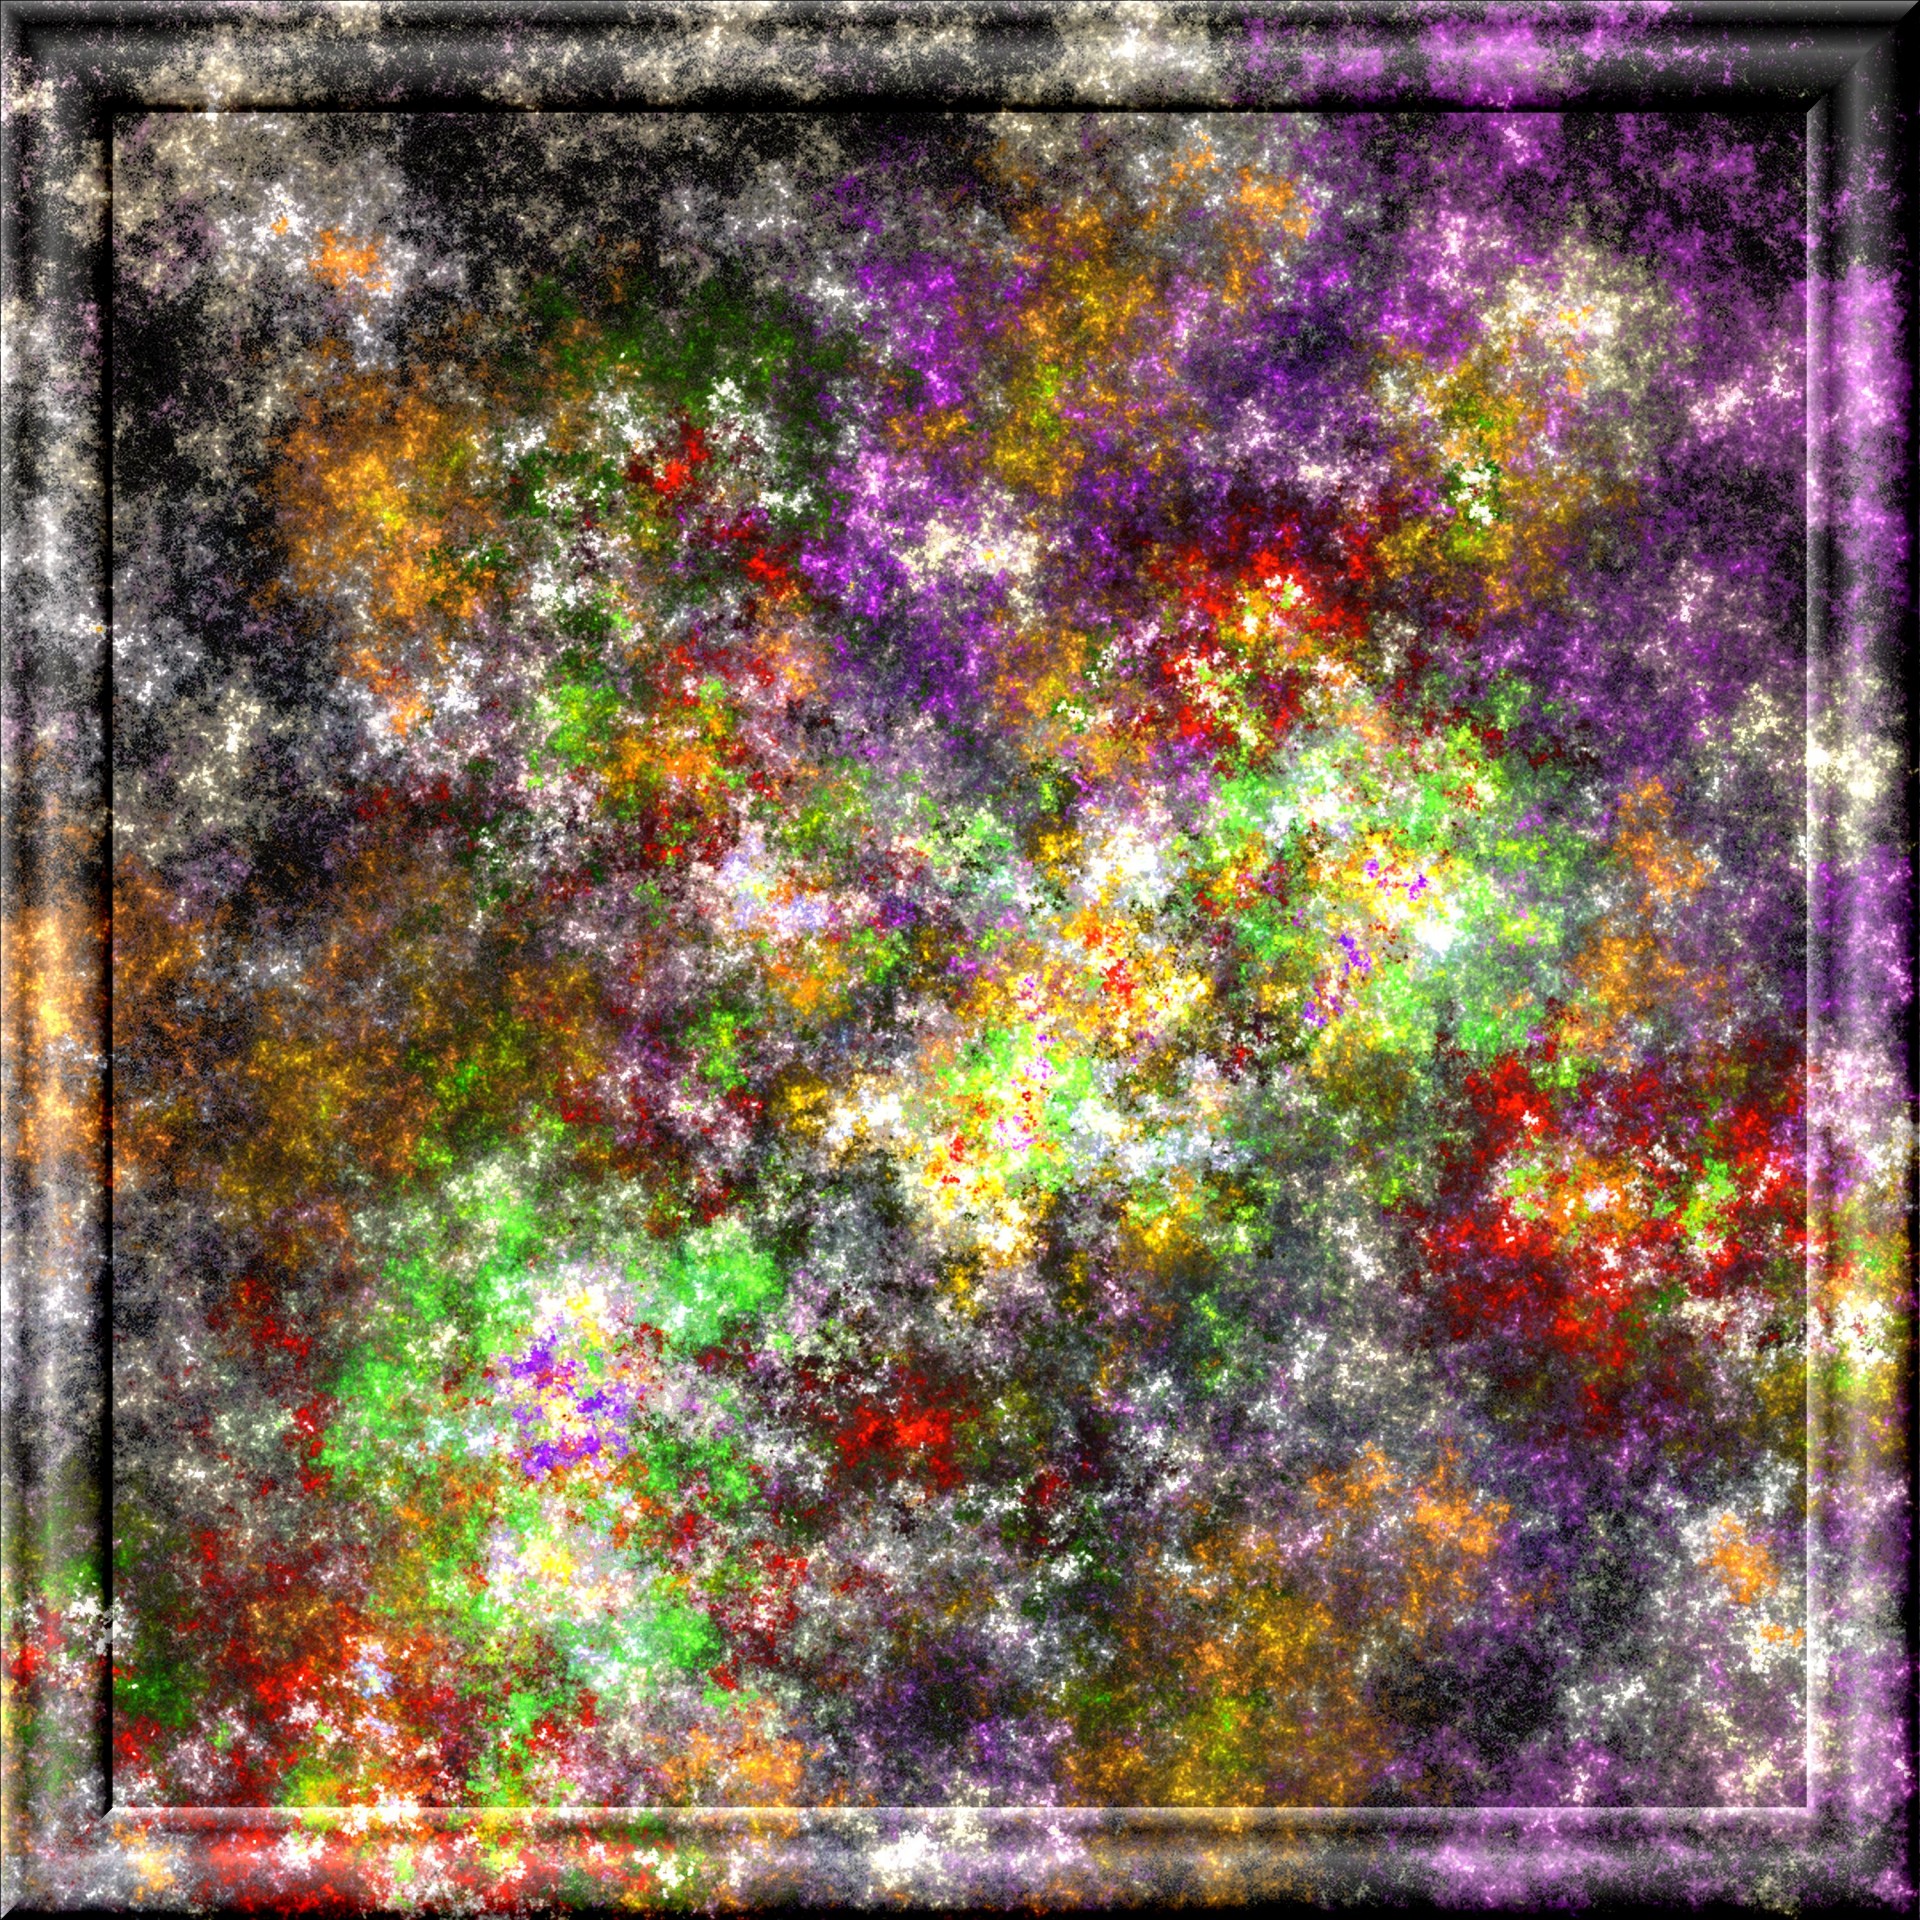 Mozaic fractal